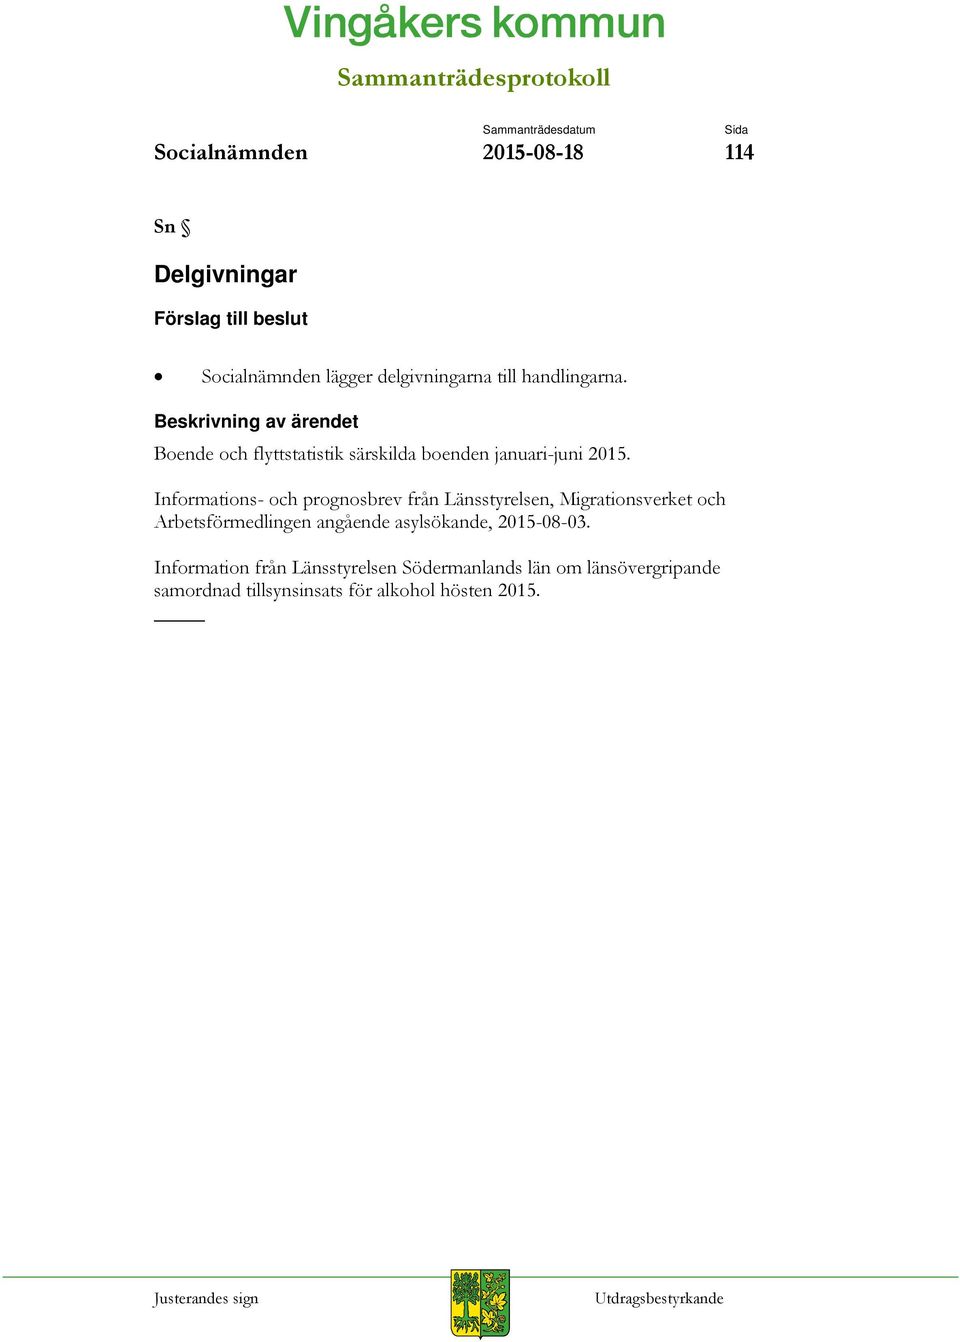 Informations- och prognosbrev från Länsstyrelsen, Migrationsverket och Arbetsförmedlingen angående asylsökande, 2015-08-03.